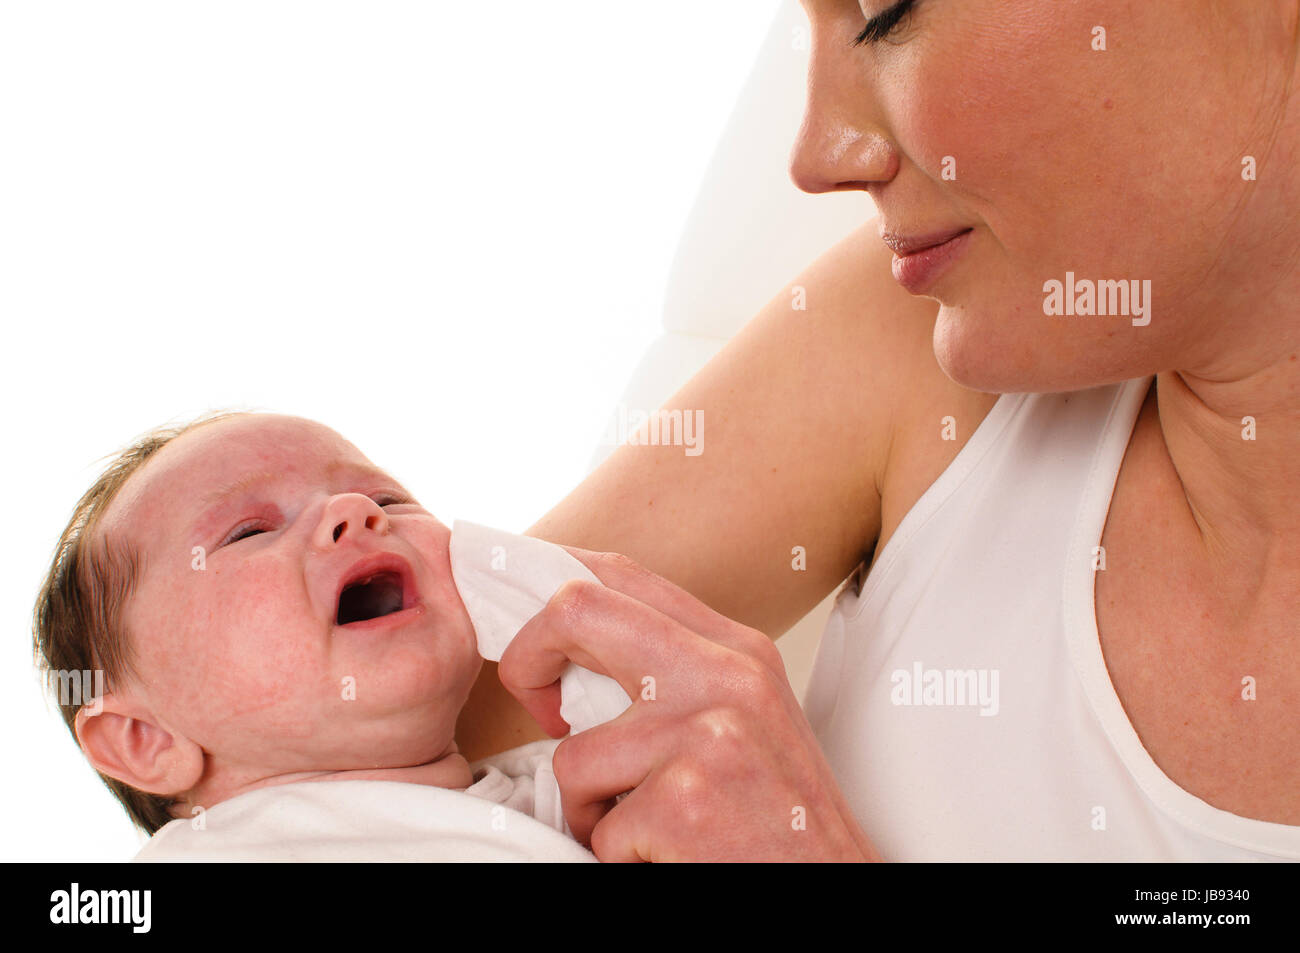 Erwachsene Eine Frau mit weißem Shirt hält einen gekleideten Säugling les weiß auf und zärtlich bras tupft ihm mit einem Tuch den Mund sauber, freigestellt Hintergrund weißem vor. Banque D'Images